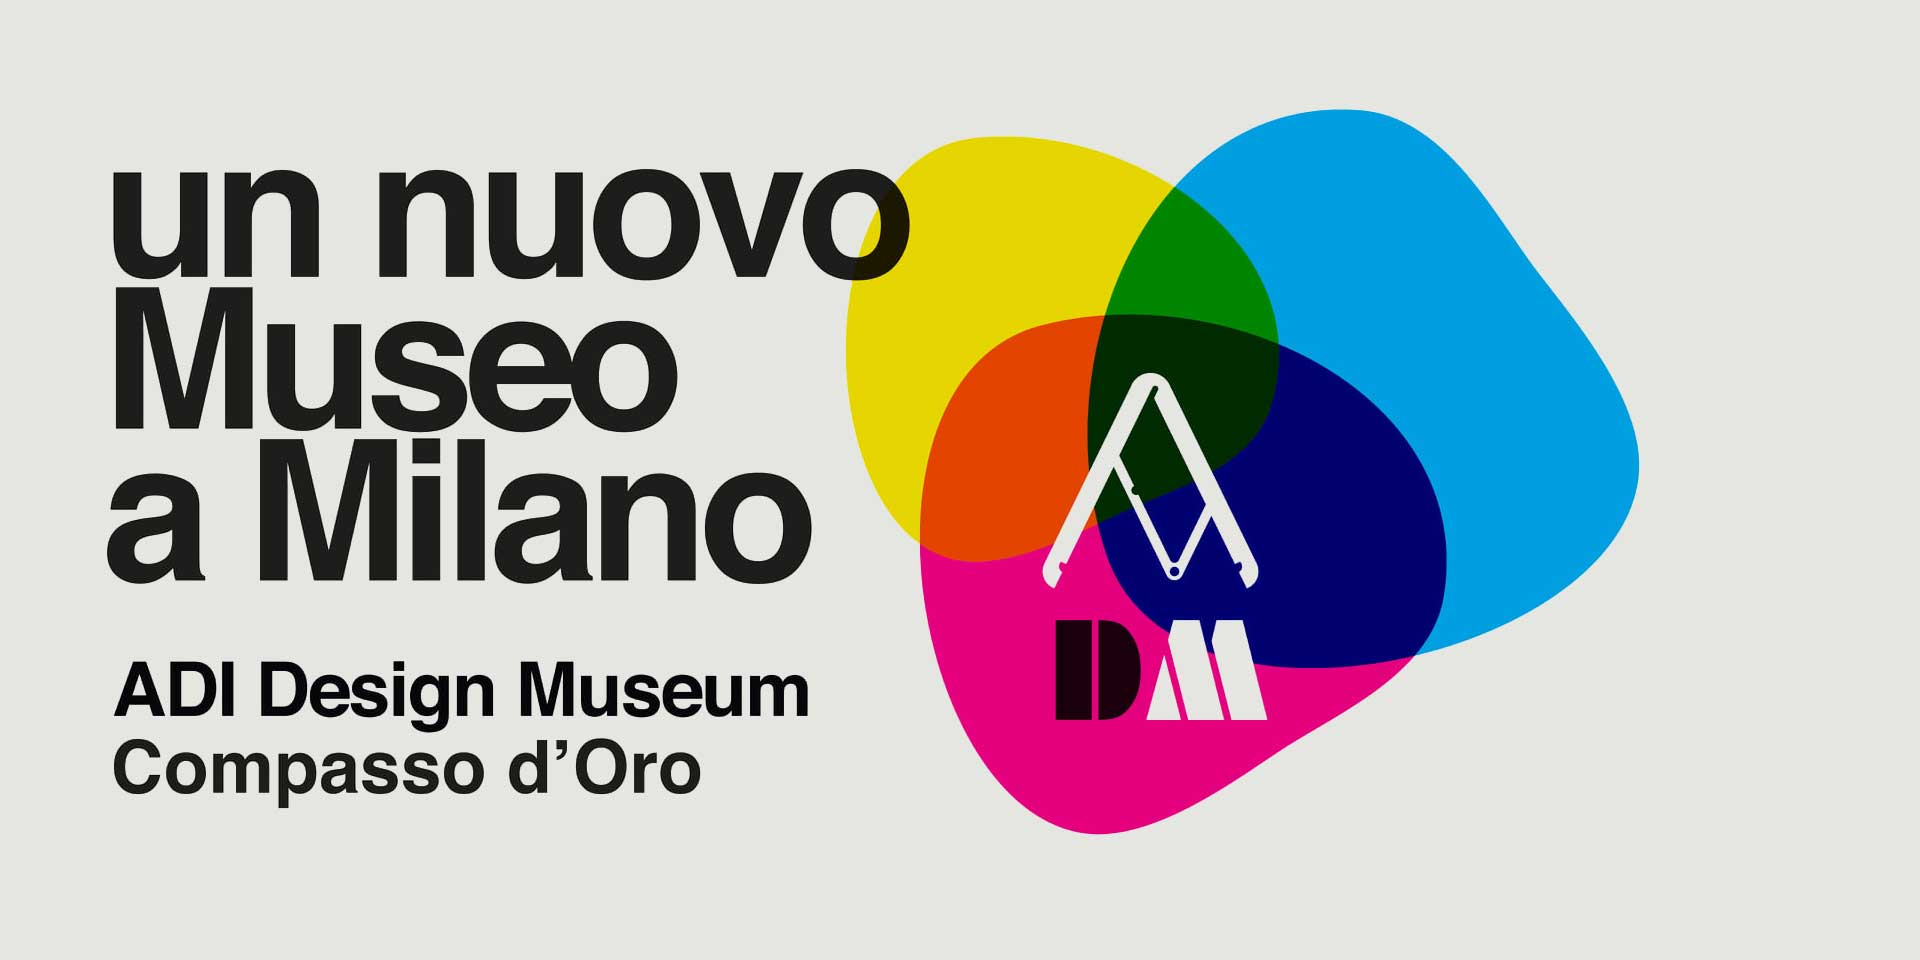 NEW ADI DESIGN MUSEUM IN MILAN